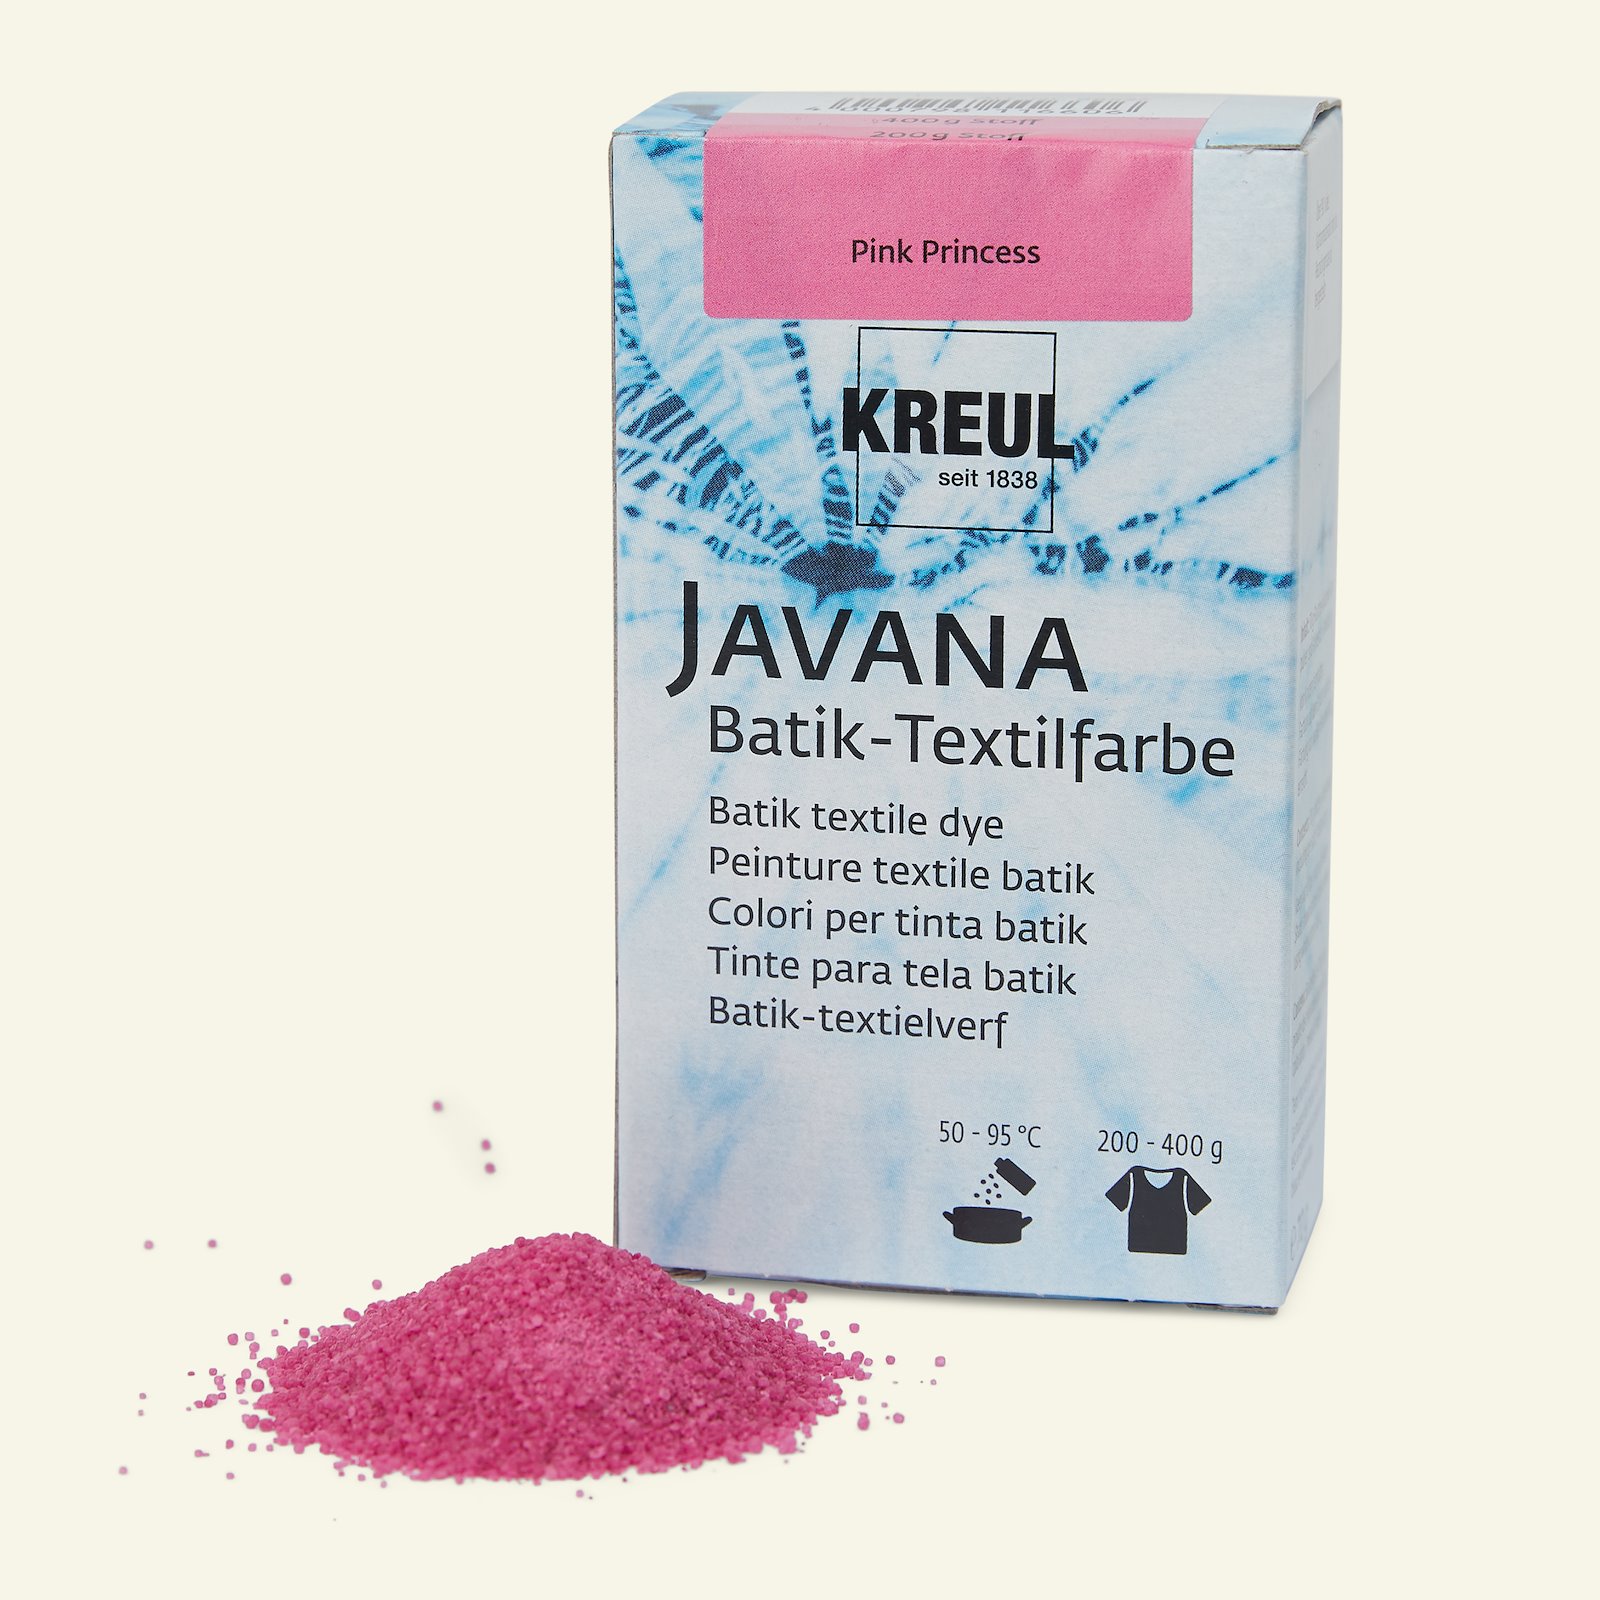 Javana batikkfarge, lys rosa, 70g 29675_pack